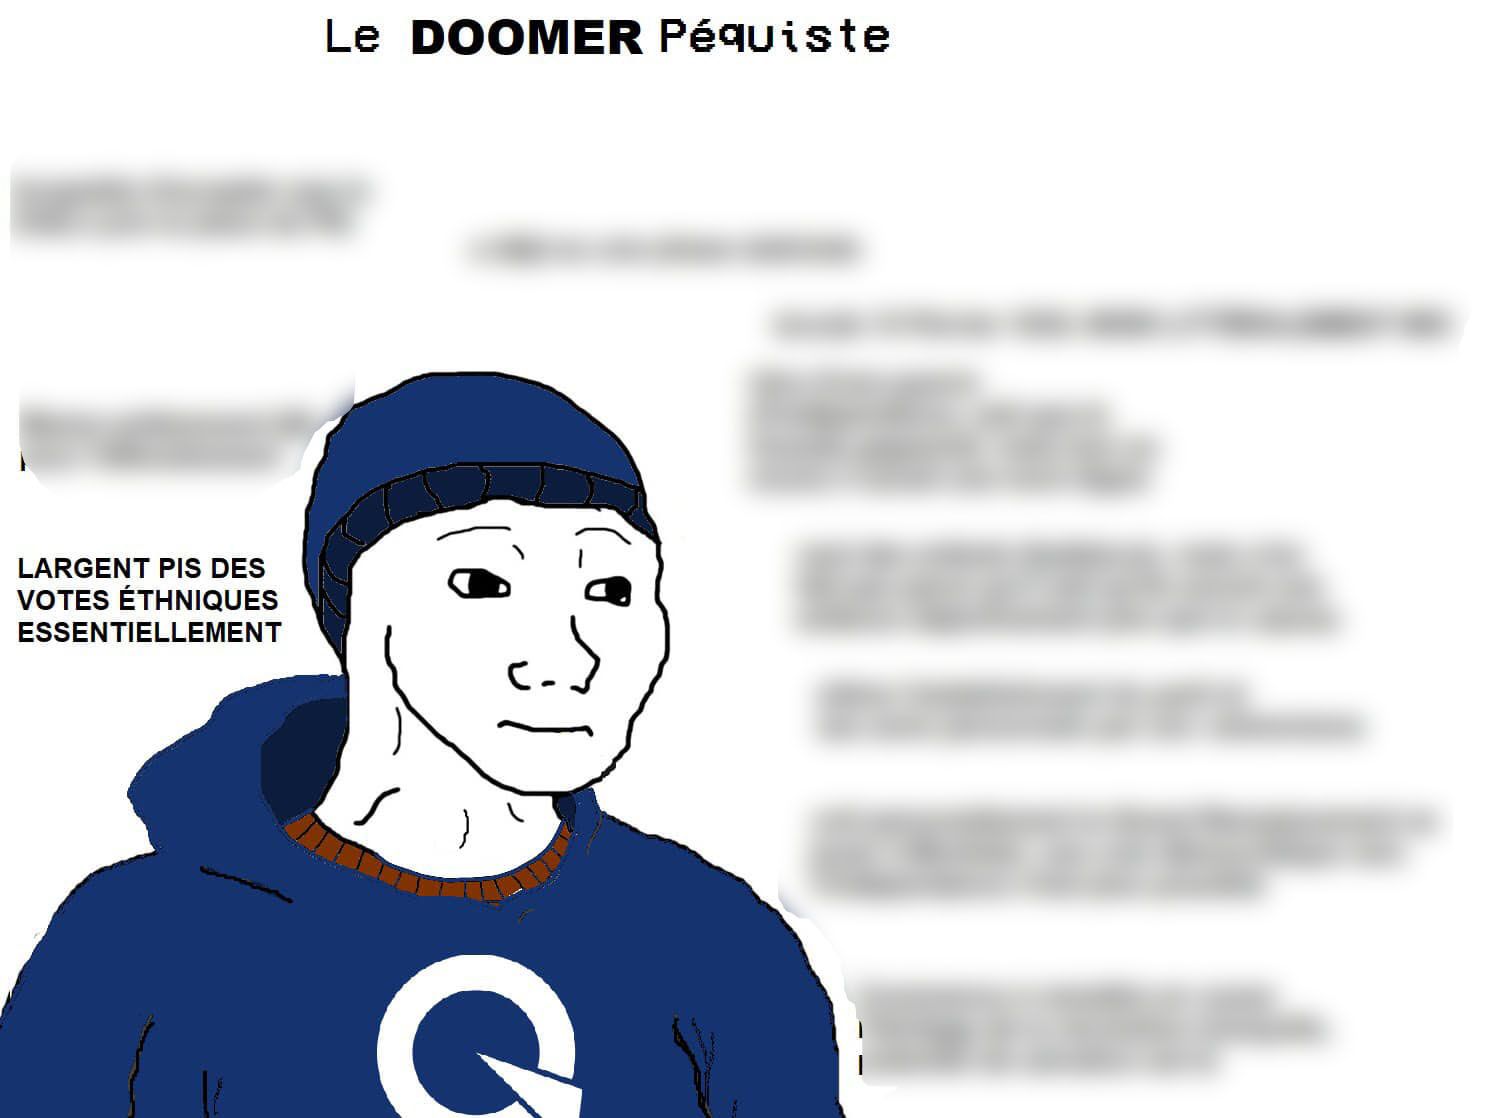 A meme titled 'Le Doomer Péquiste' which shows a wojak figure saying, among other things, 'L'argent et les votes ethniques, essentiellement'.